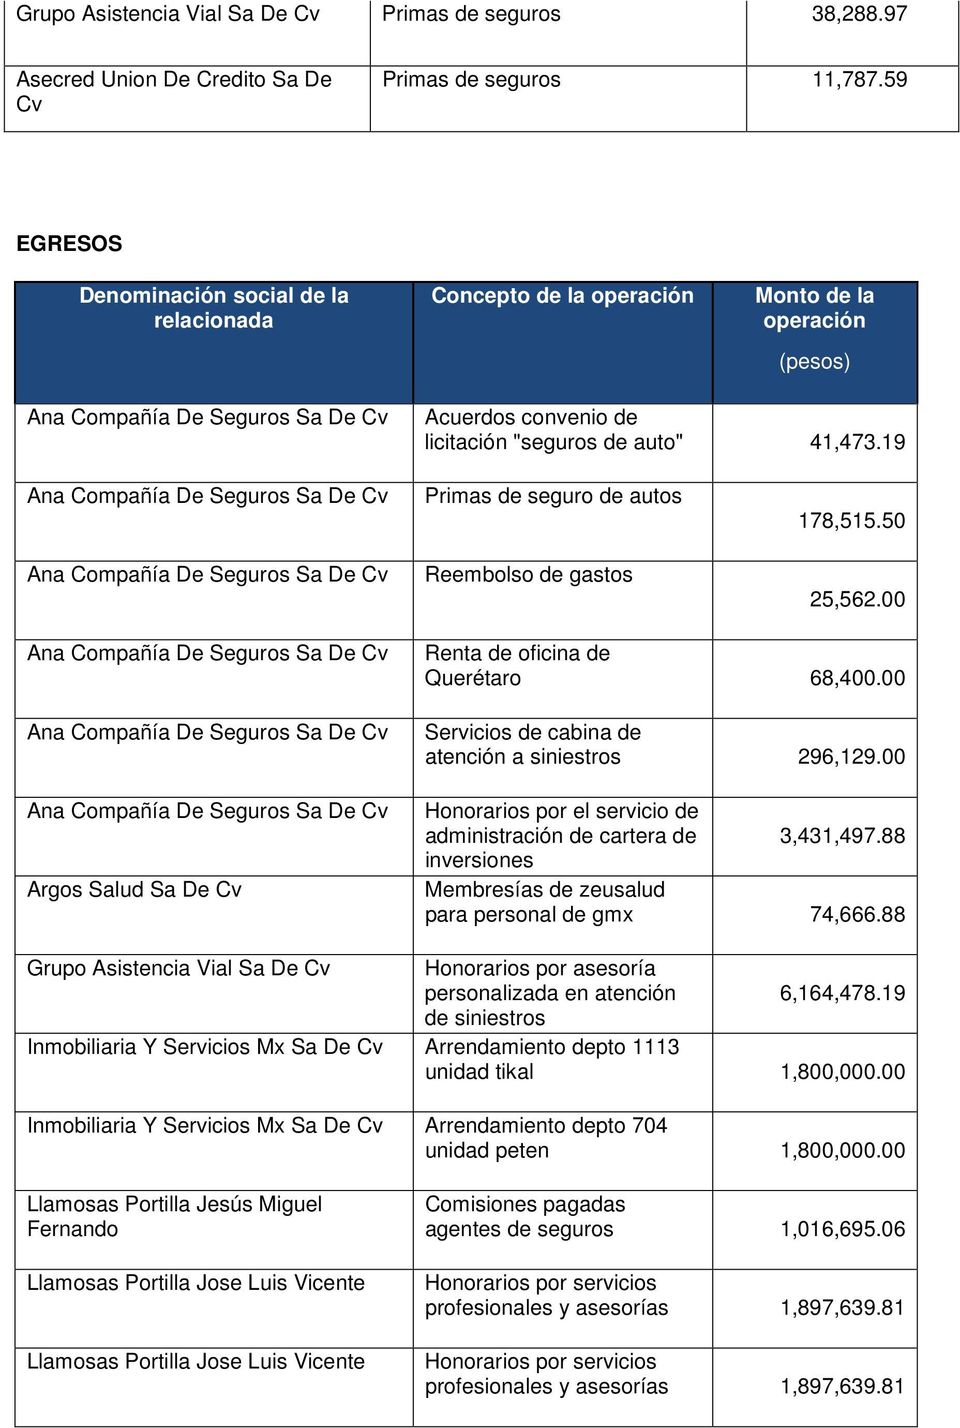 00 Argos Salud Sa De Renta de oficina de Querétaro 68,400.00 Servicios de cabina de atención a siniestros 296,129.00 Honorarios por el servicio de administración de cartera de 3,431,497.